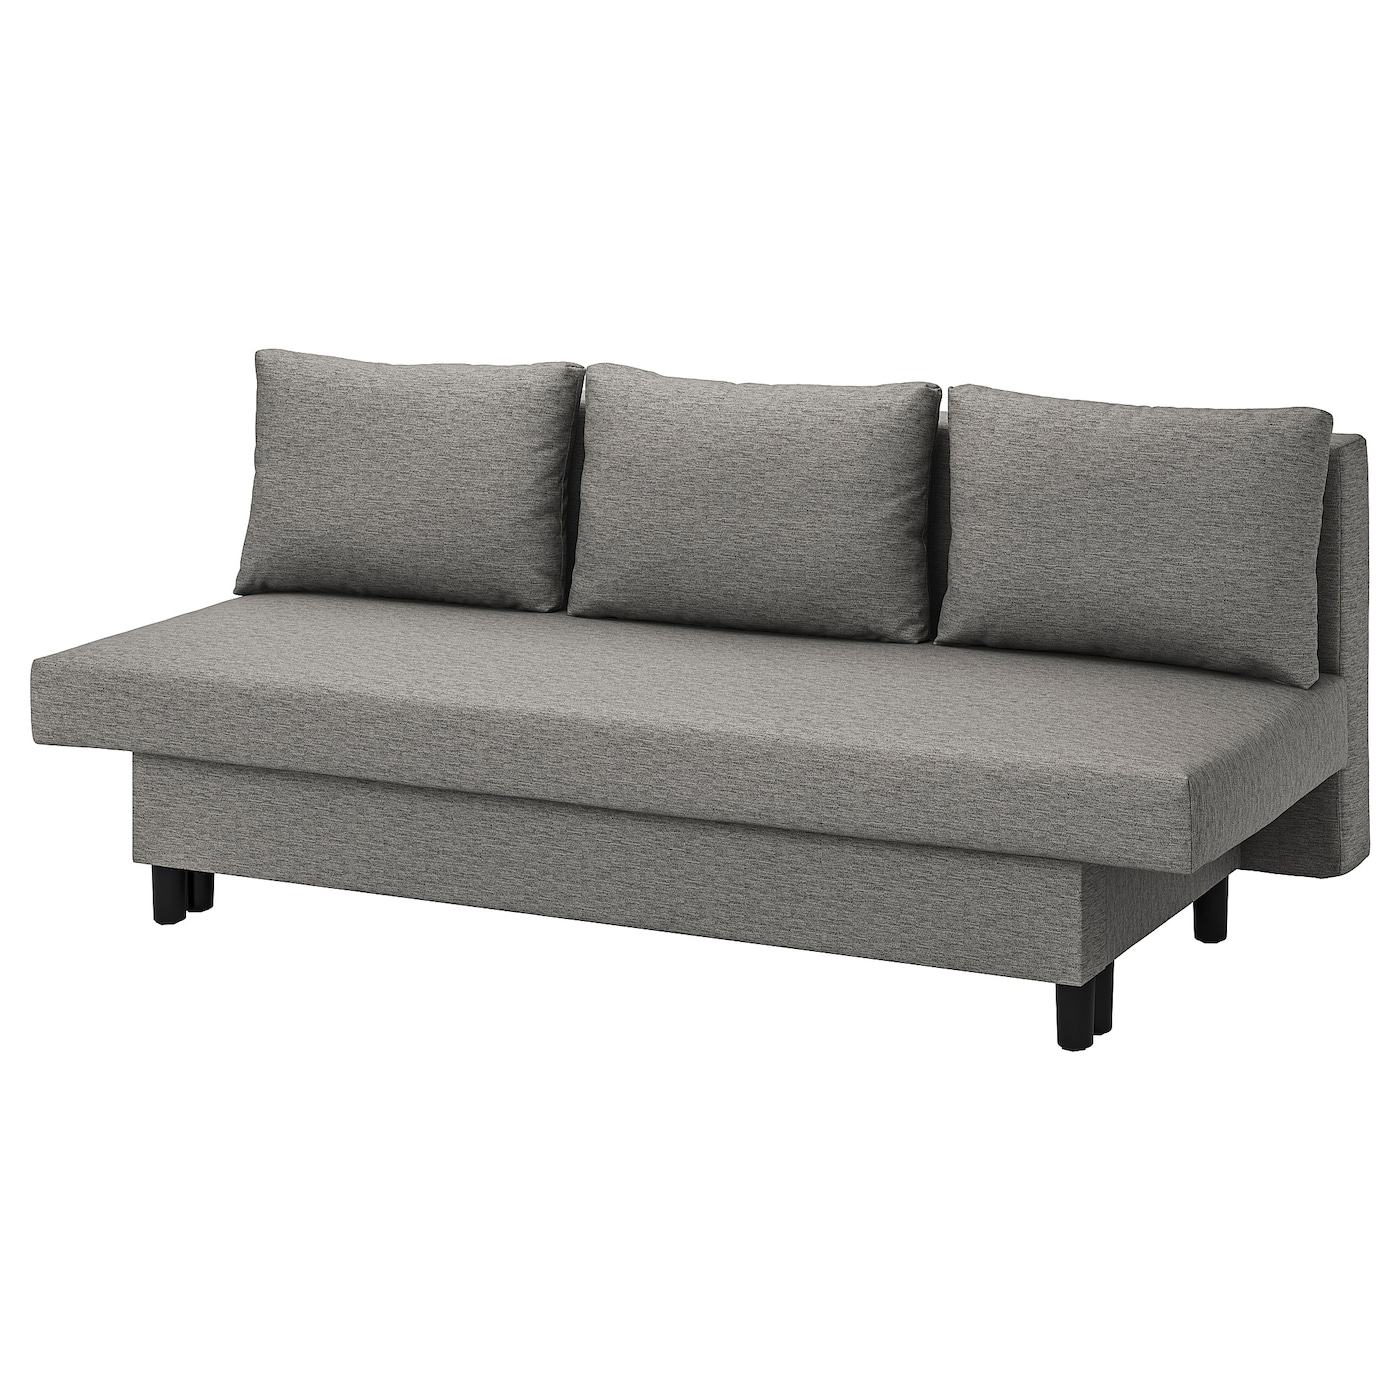 ЭЛВДАЛЕН 3 дивана-кровати с откидной спинкой, Книса серый бежевый ÄLVDALEN IKEA